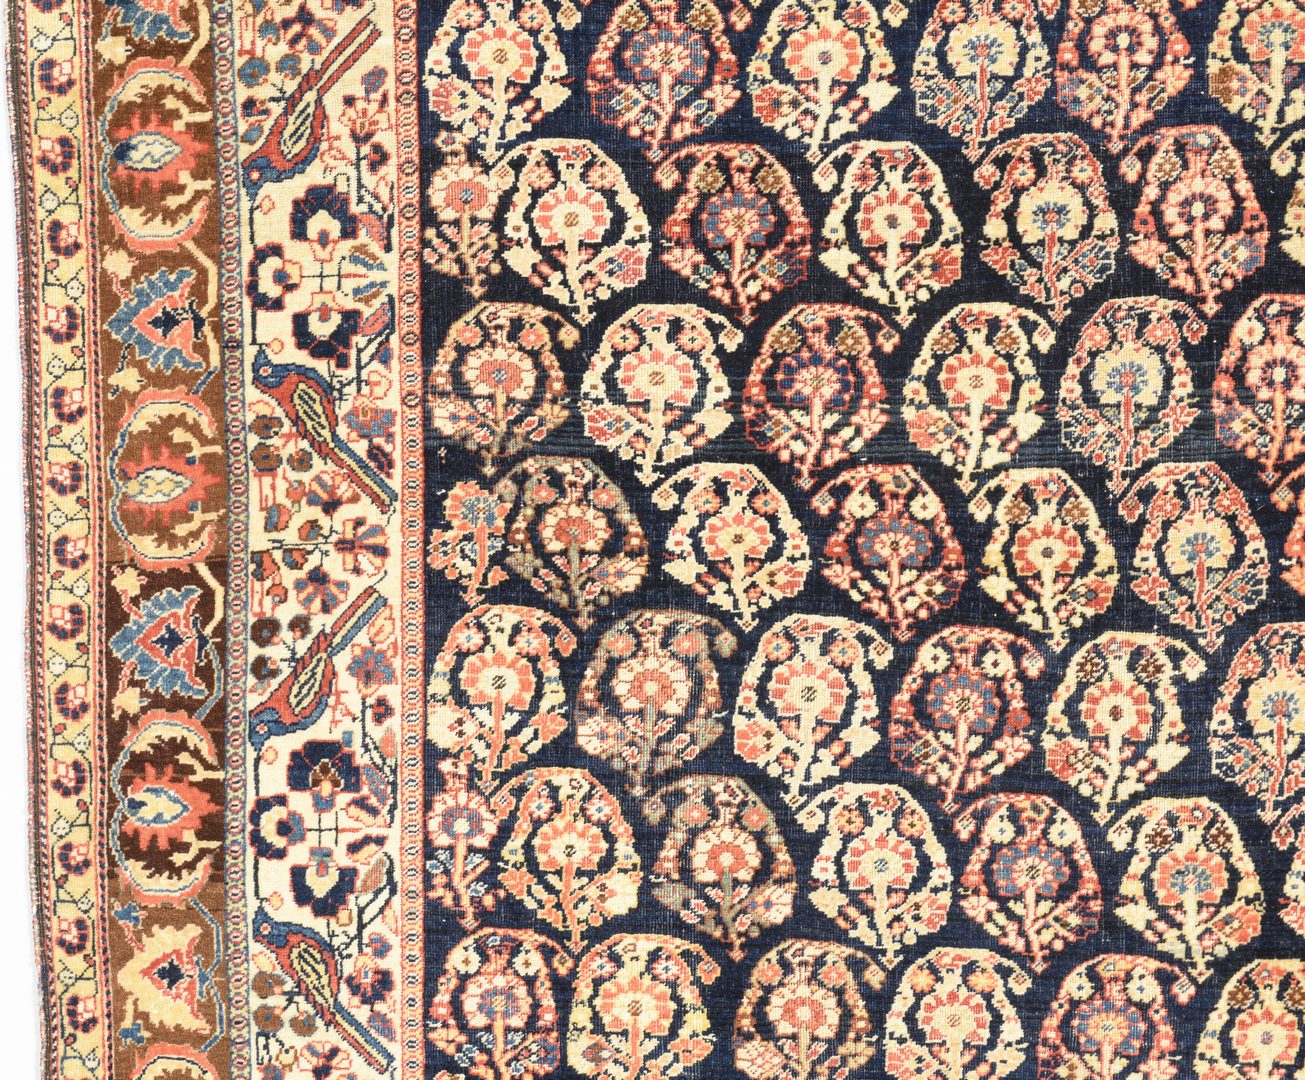 Lot 367: Antique Persian Qashqai area rug, 7'1' x 4'10"